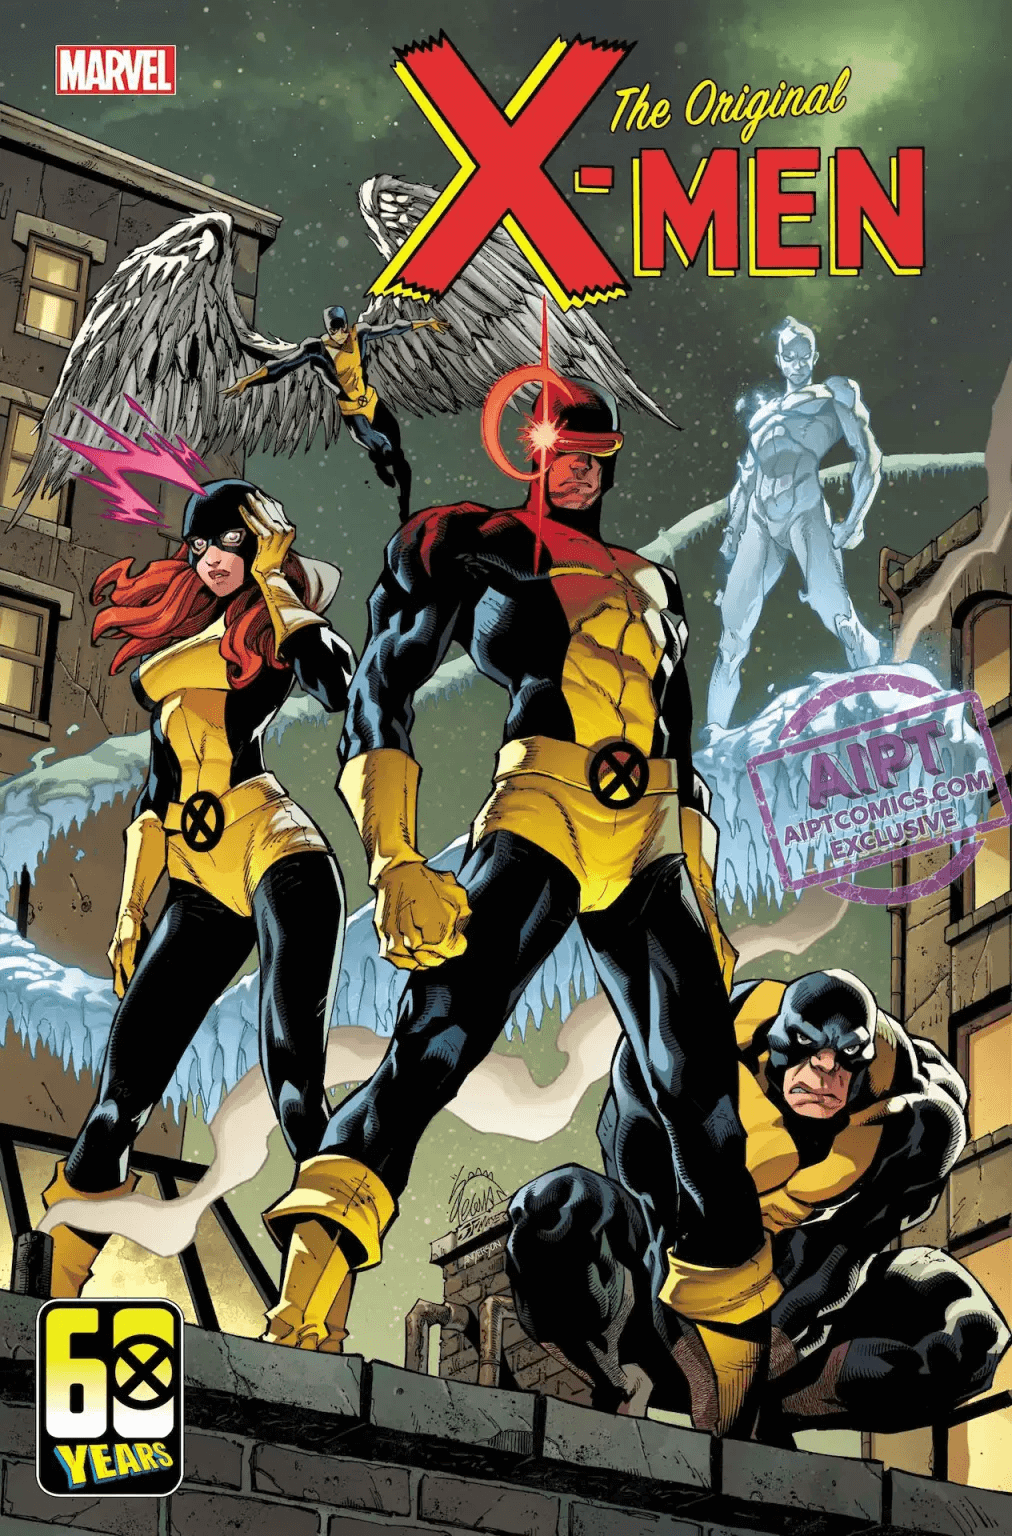 Couverture de Original X-Men 1 par Ryan Stegman, avec les 5 membres originaux.